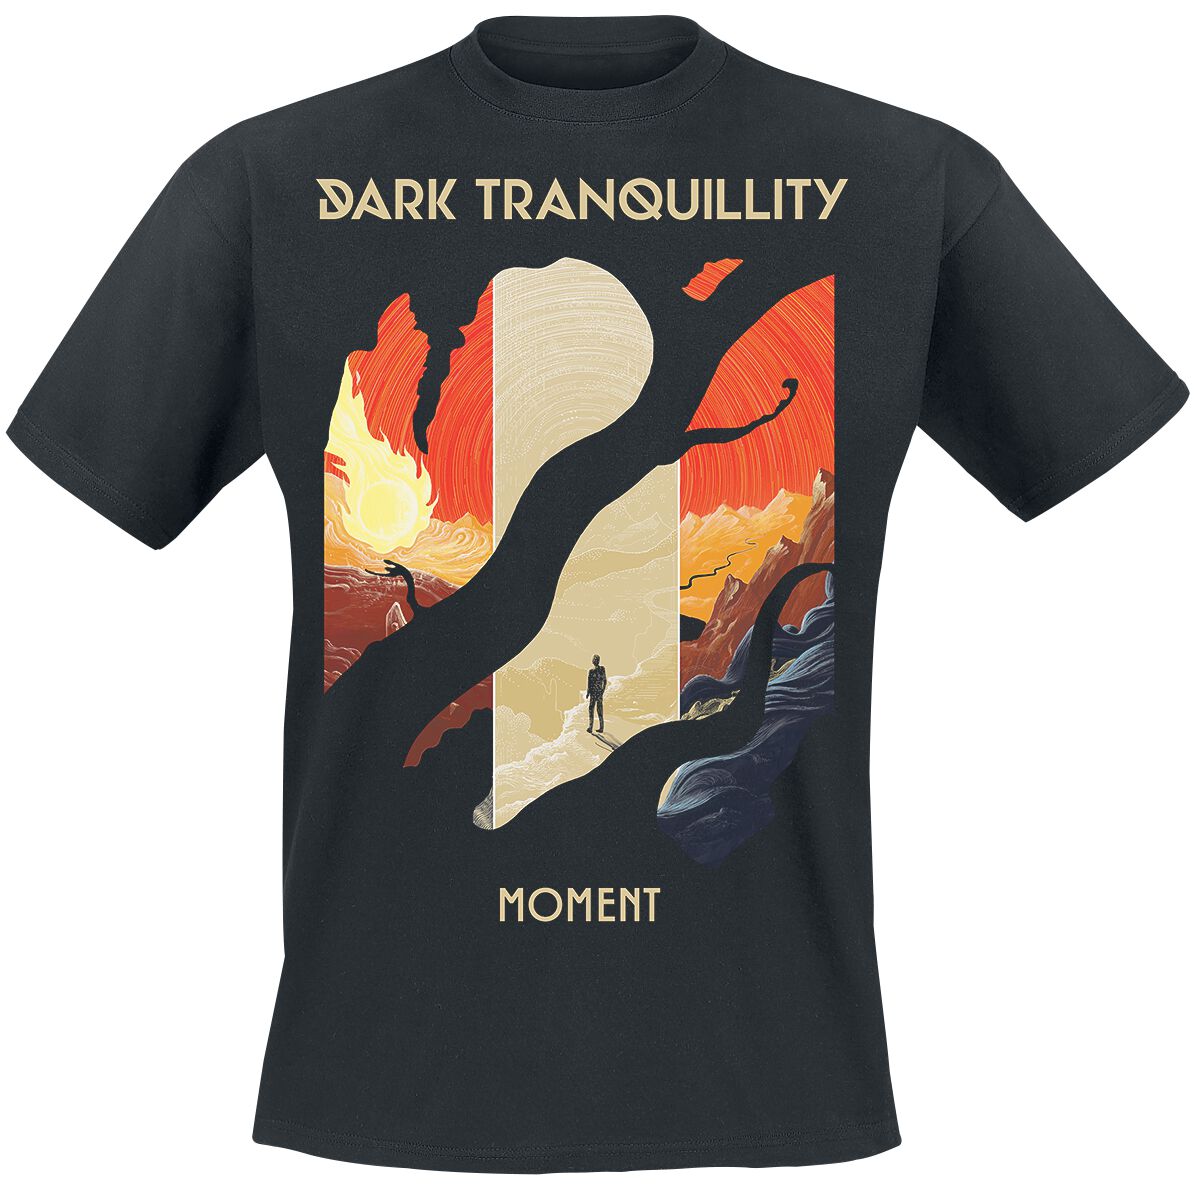 Dark Tranquillity T-Shirt - Moment - S bis XL - für Männer - Größe S - schwarz  - EMP exklusives Merchandise!